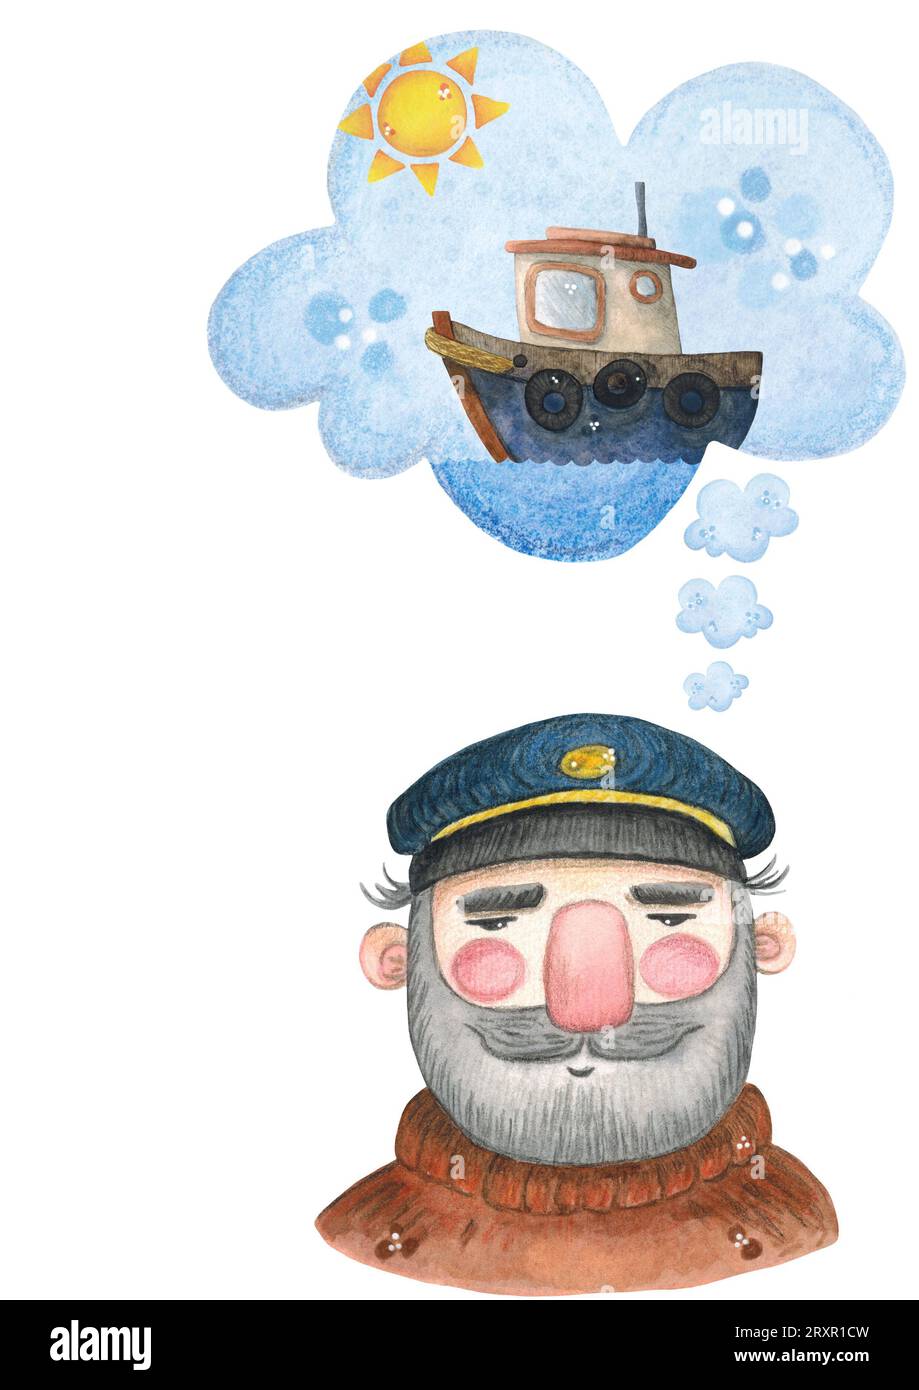 Illustration aquarelle, carte postale sur les rêves du capitaine de la mer sur fond blanc Banque D'Images